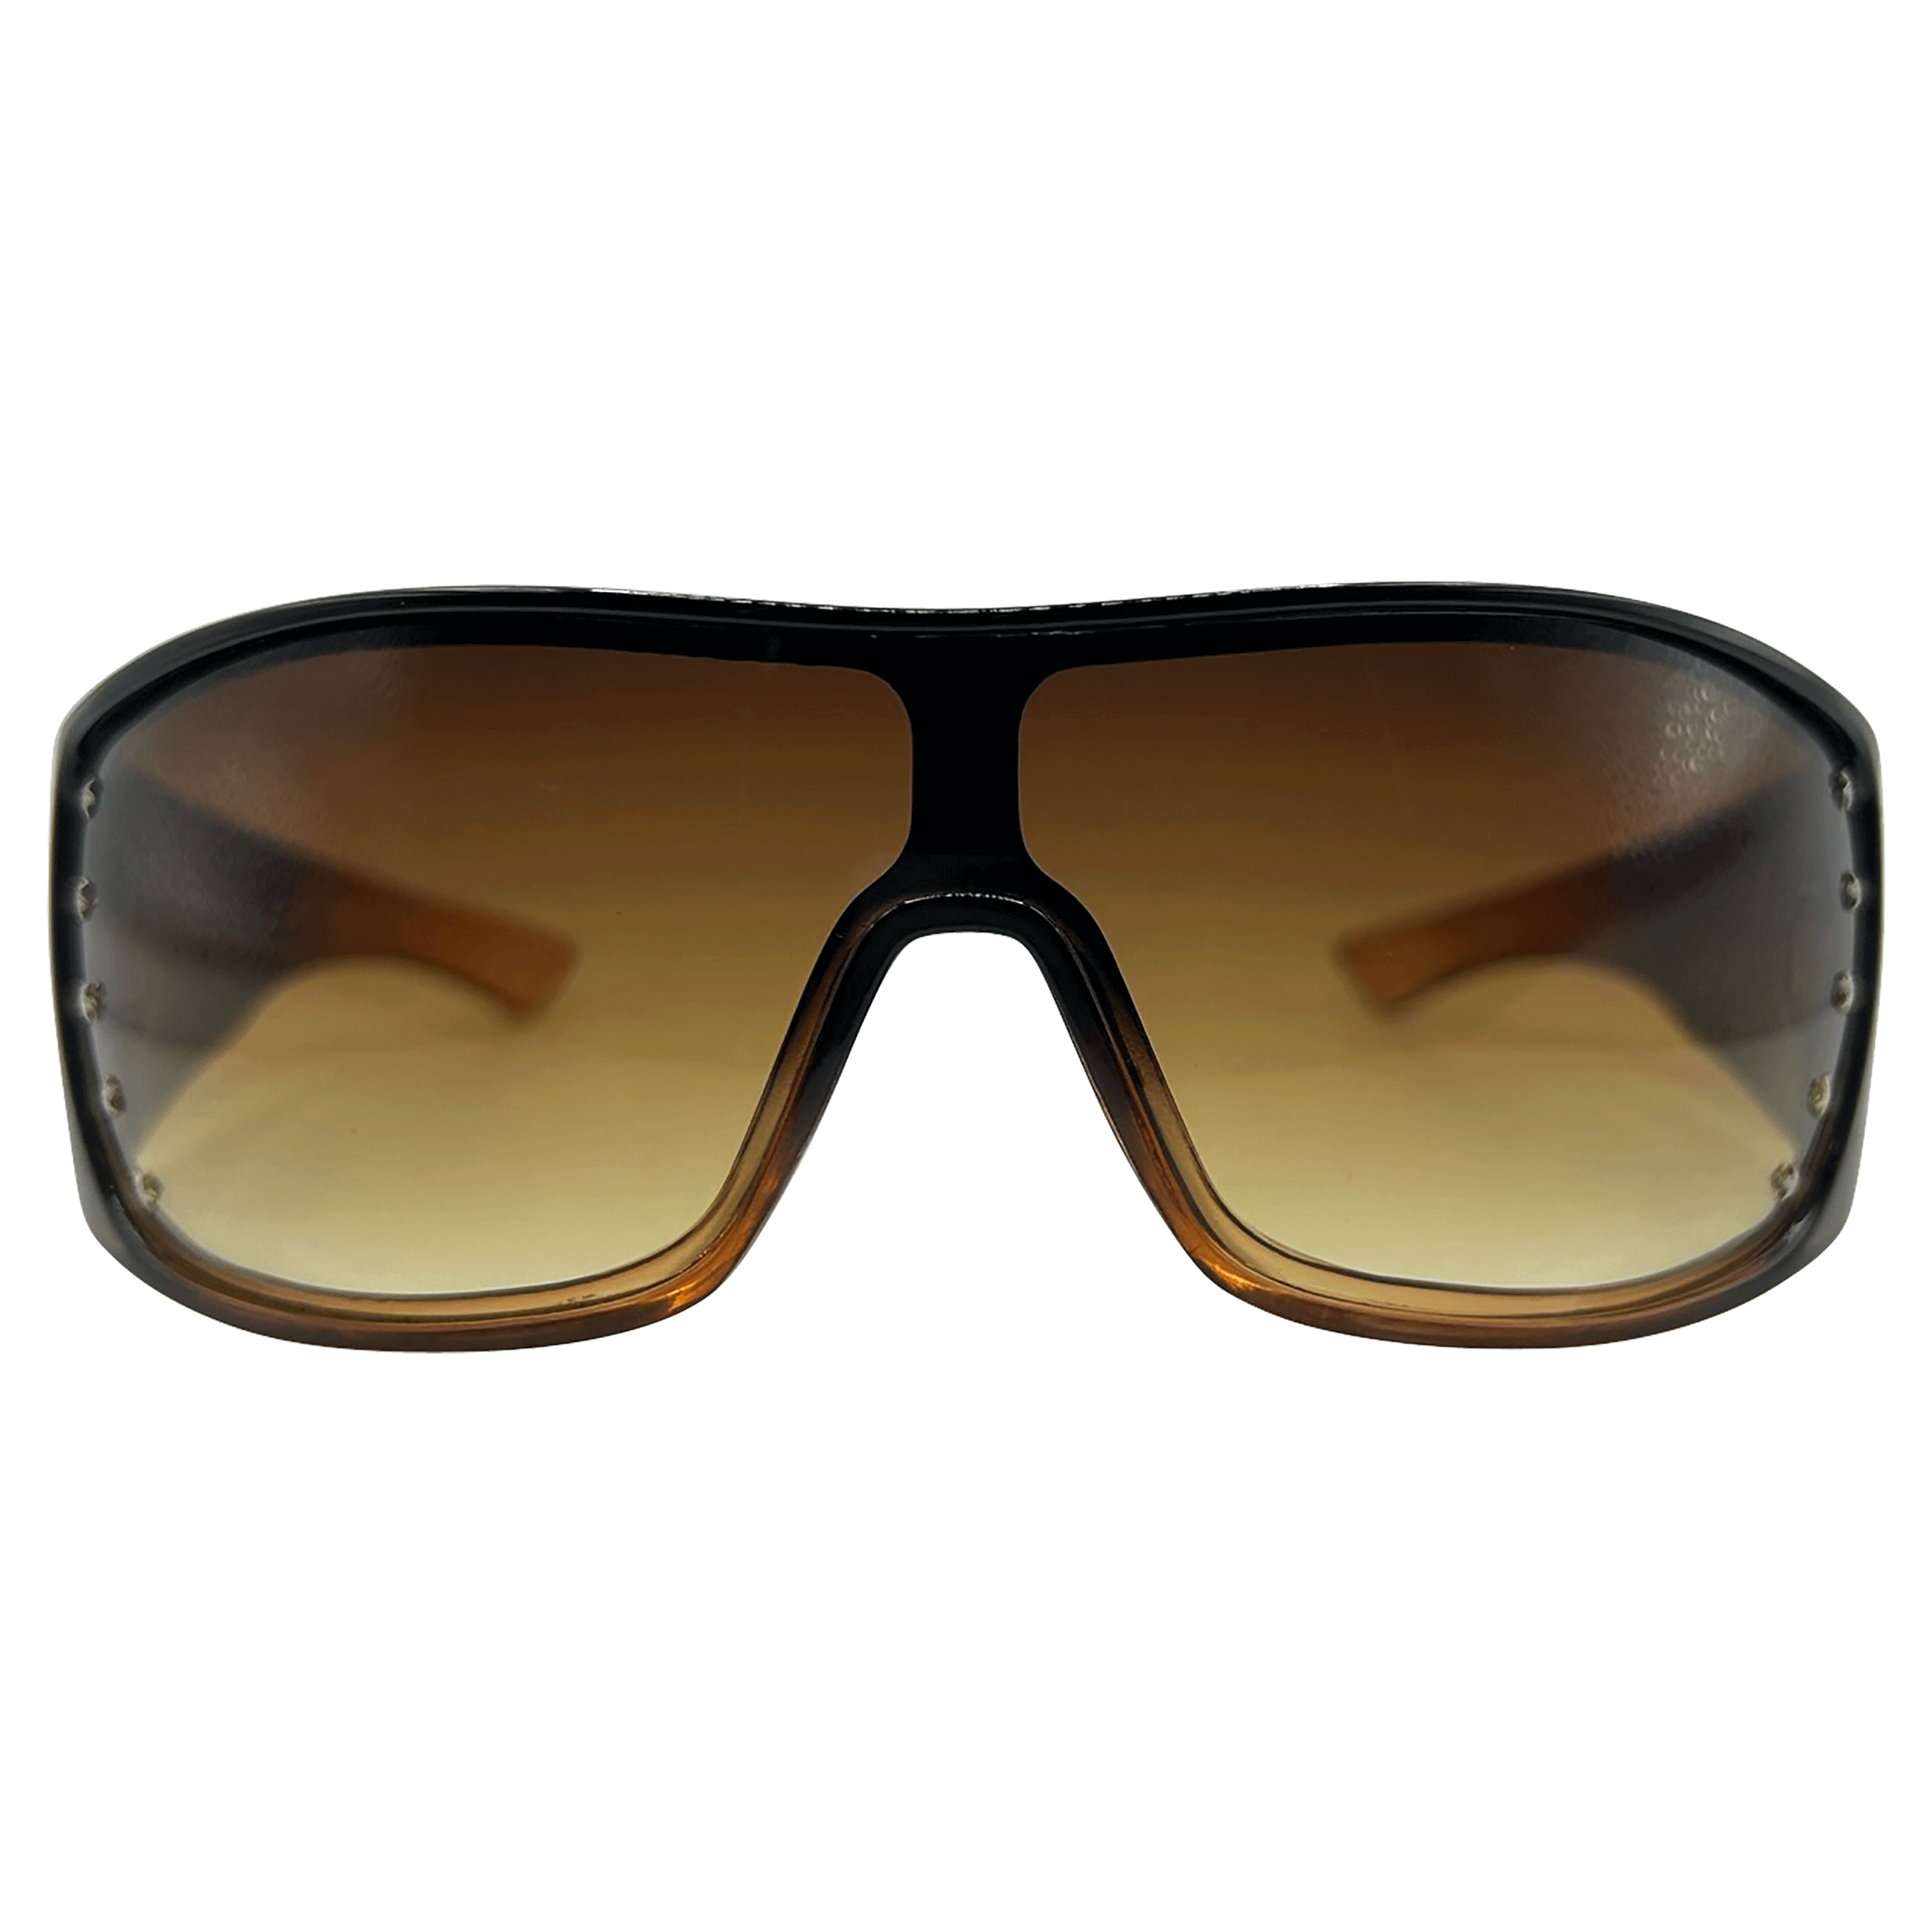 SUPERSTAR Shield Vintage Fashion Sunglasses | Giant Vintage